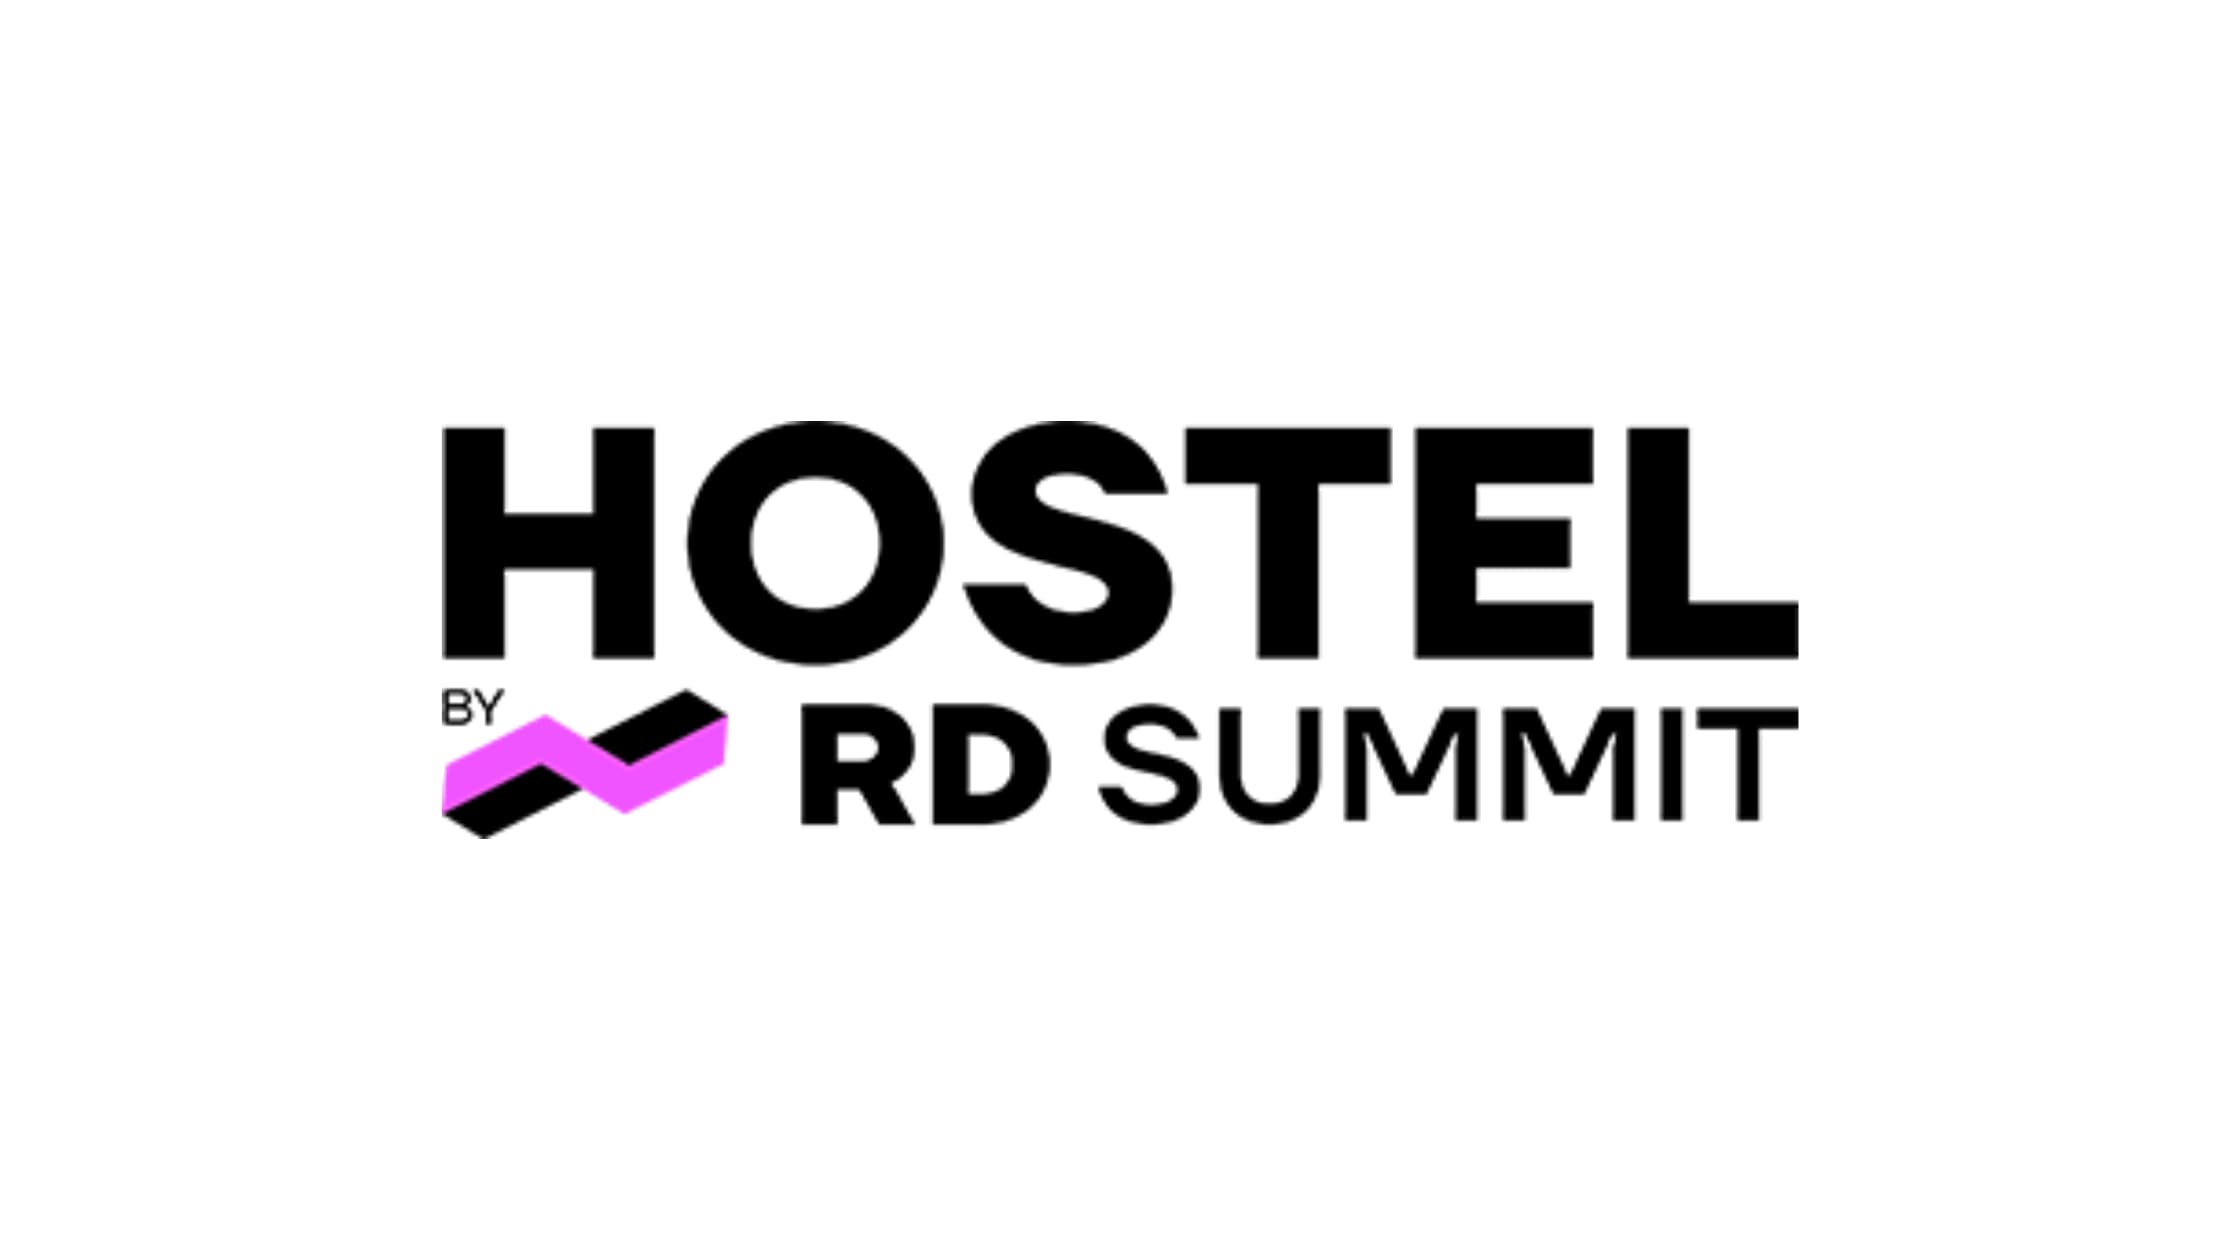 rd hostel by rd summit